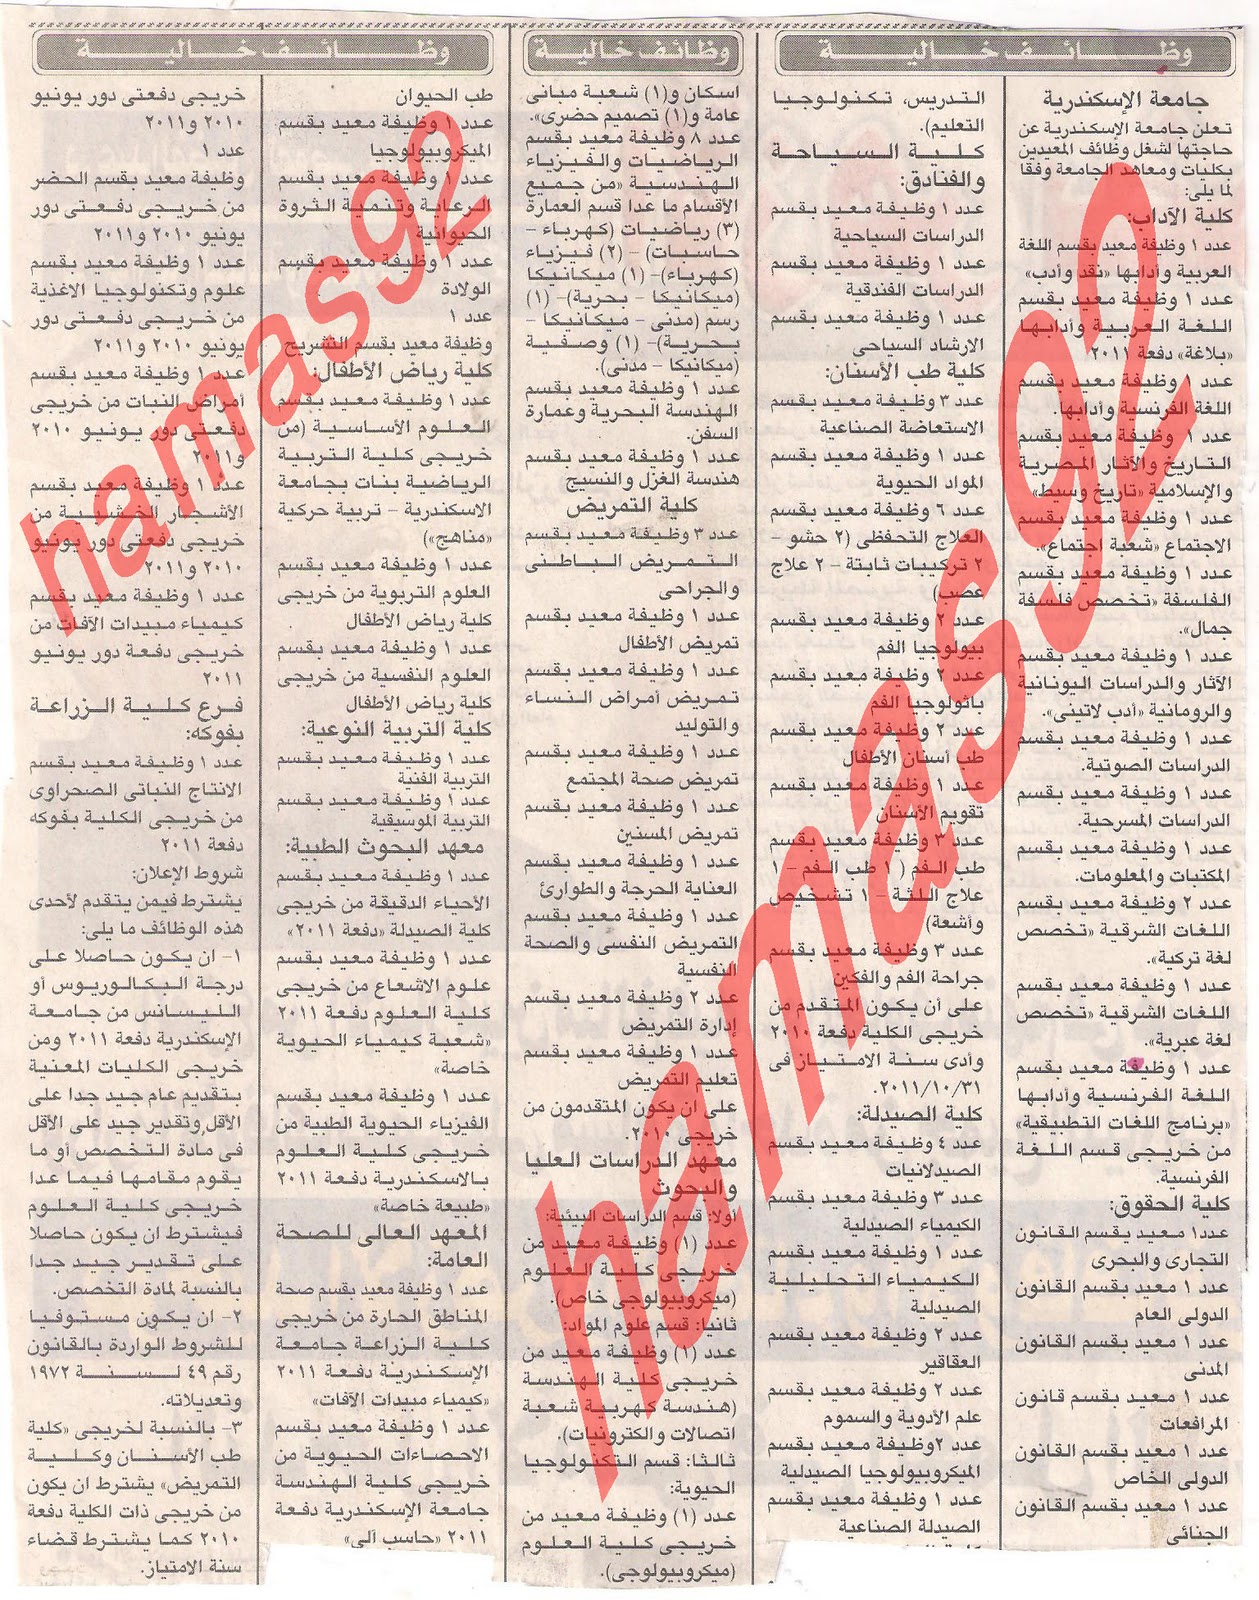 اعلانات وظائف جريدة الجمهورية اليوم الاحد 8 يناير 2012  Picture+004